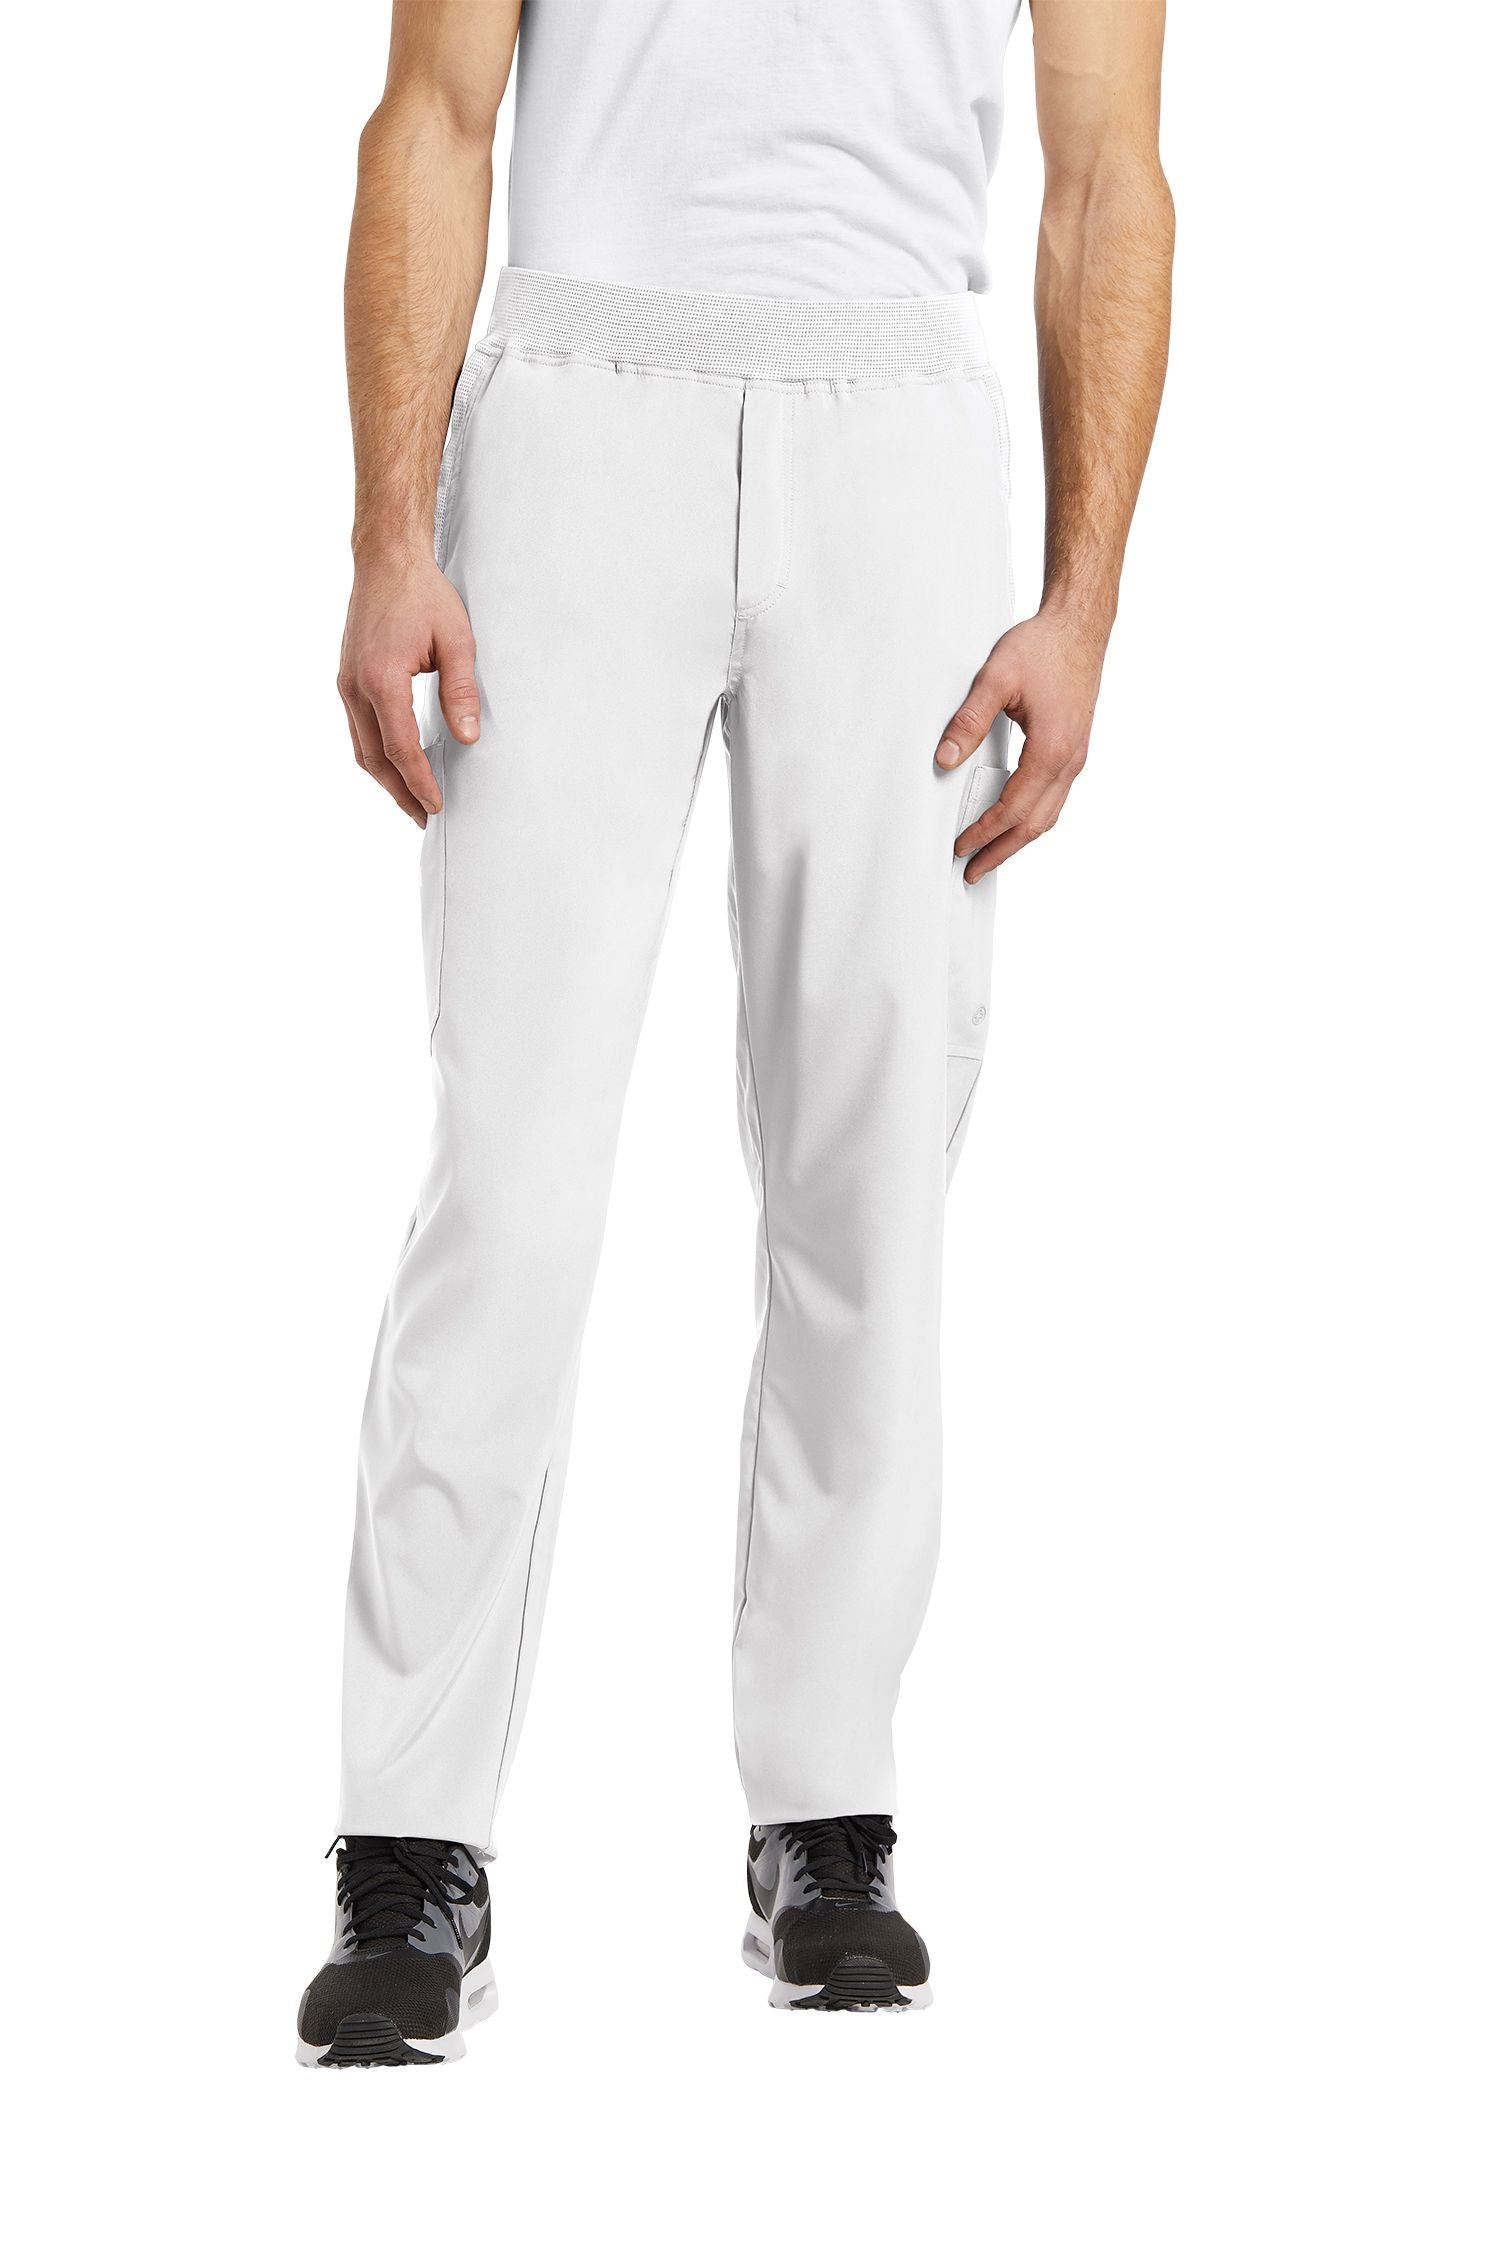 Pantalon de travail pour homme White Cross FIT #229 blanc